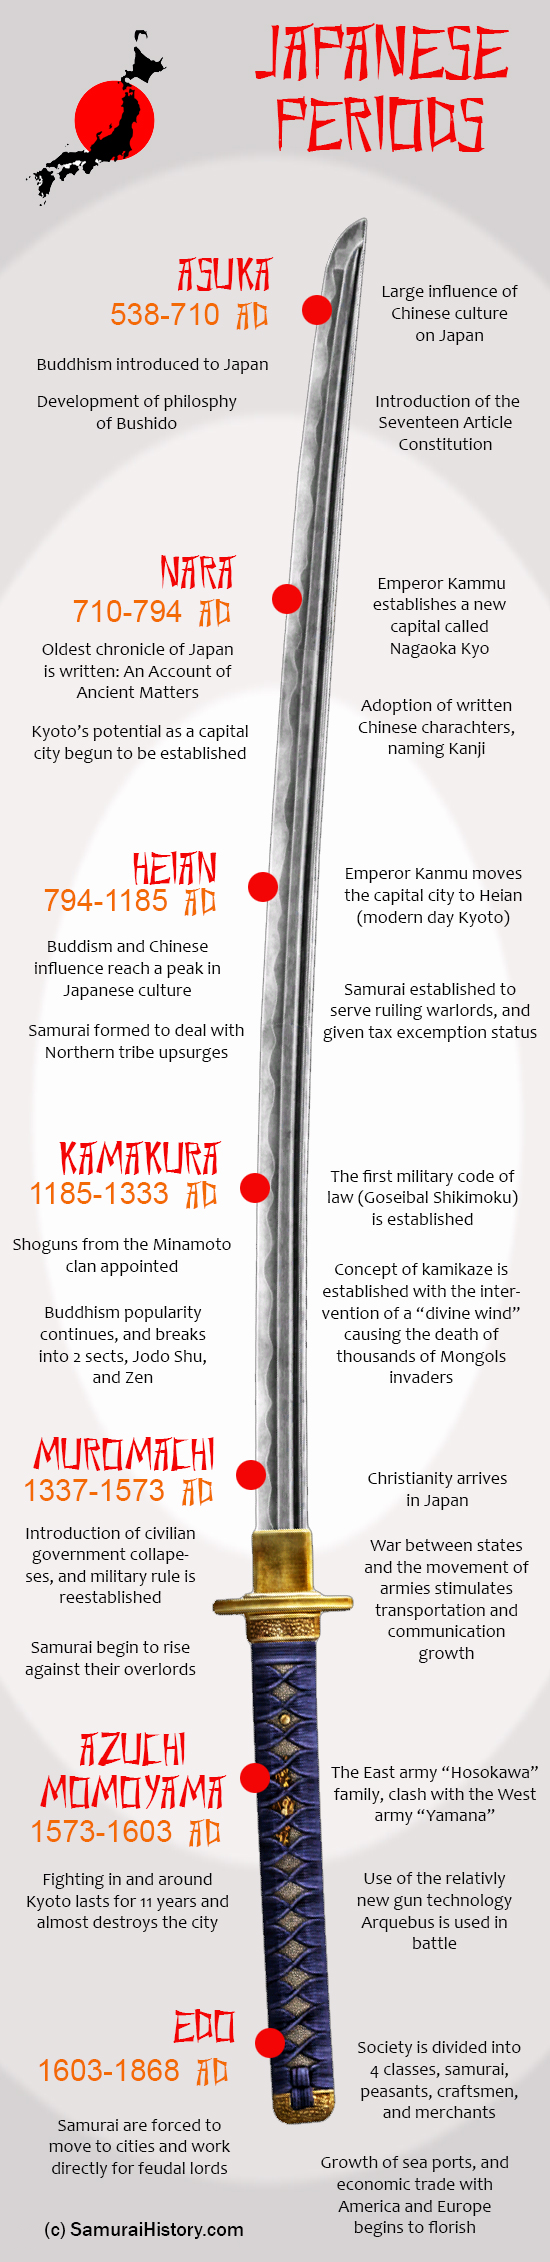 Samurai Periods